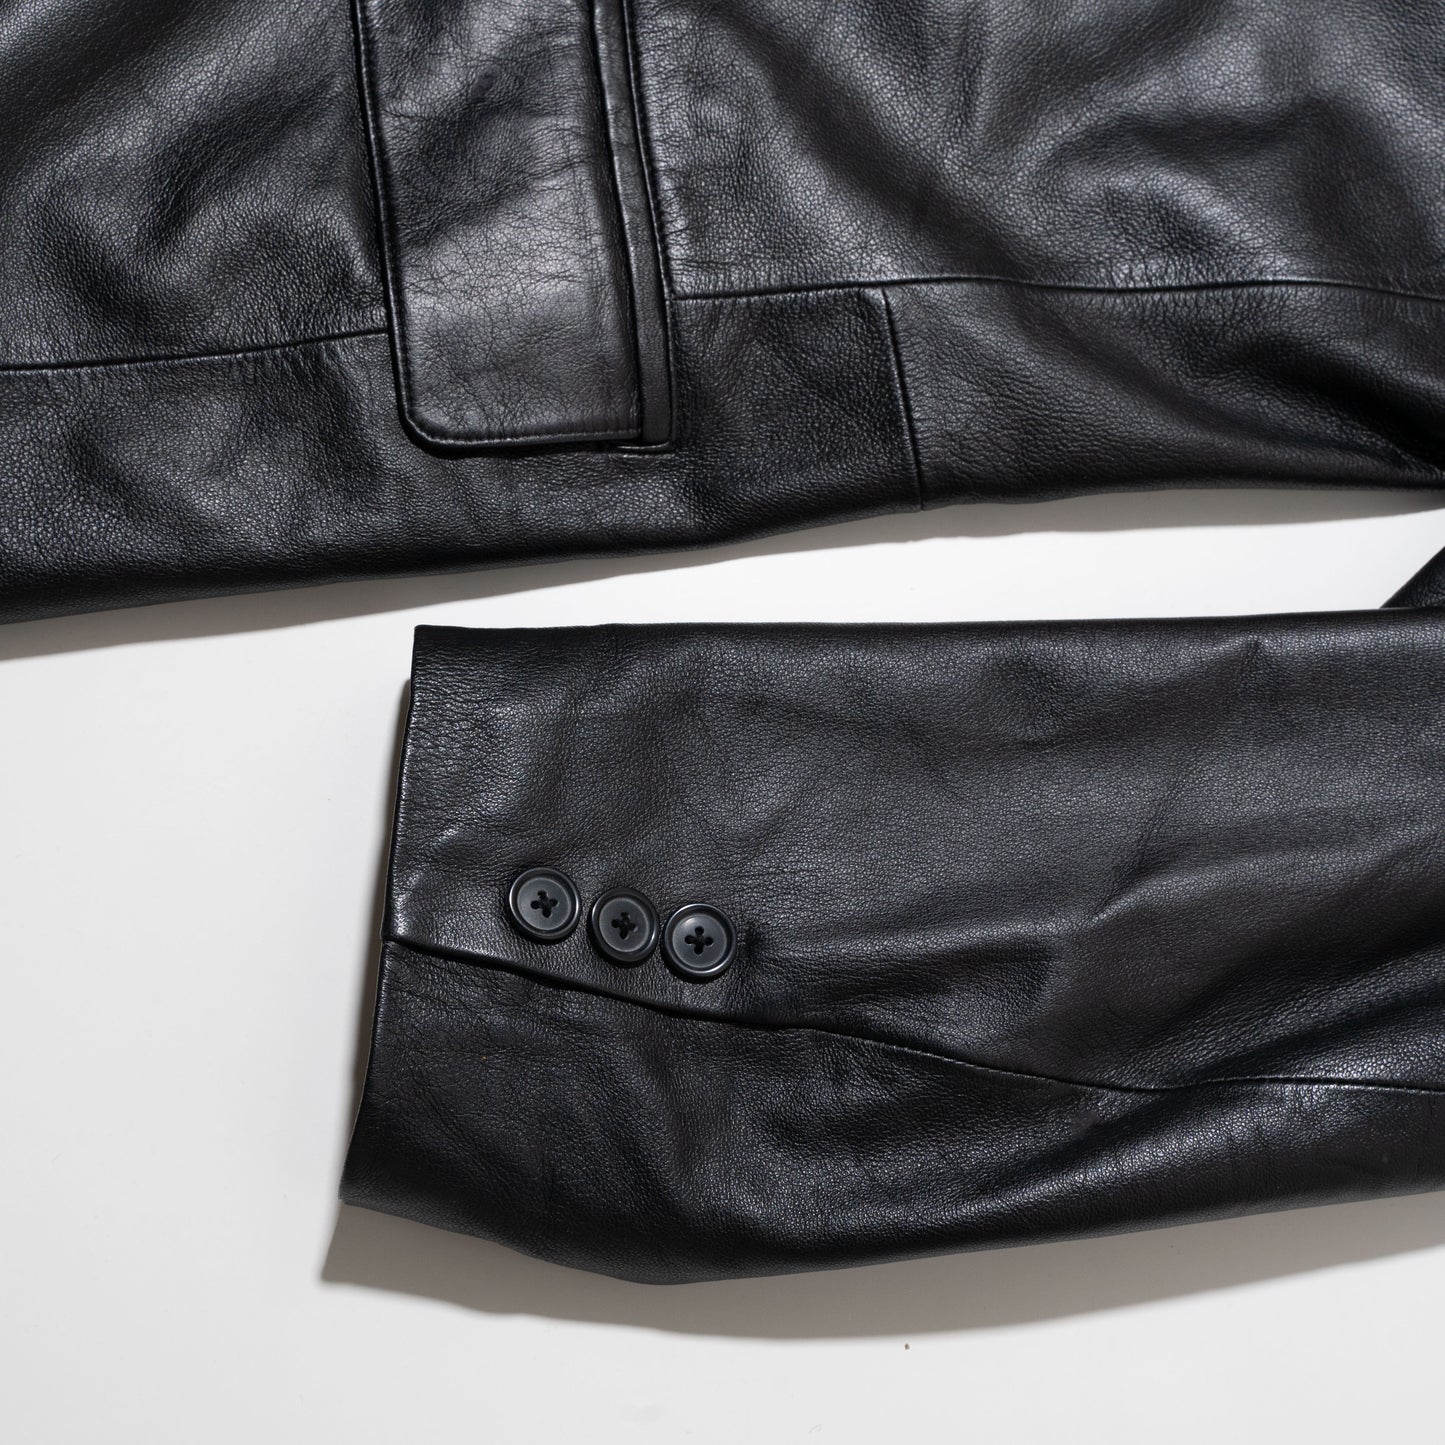 vintage leather tailored jacket